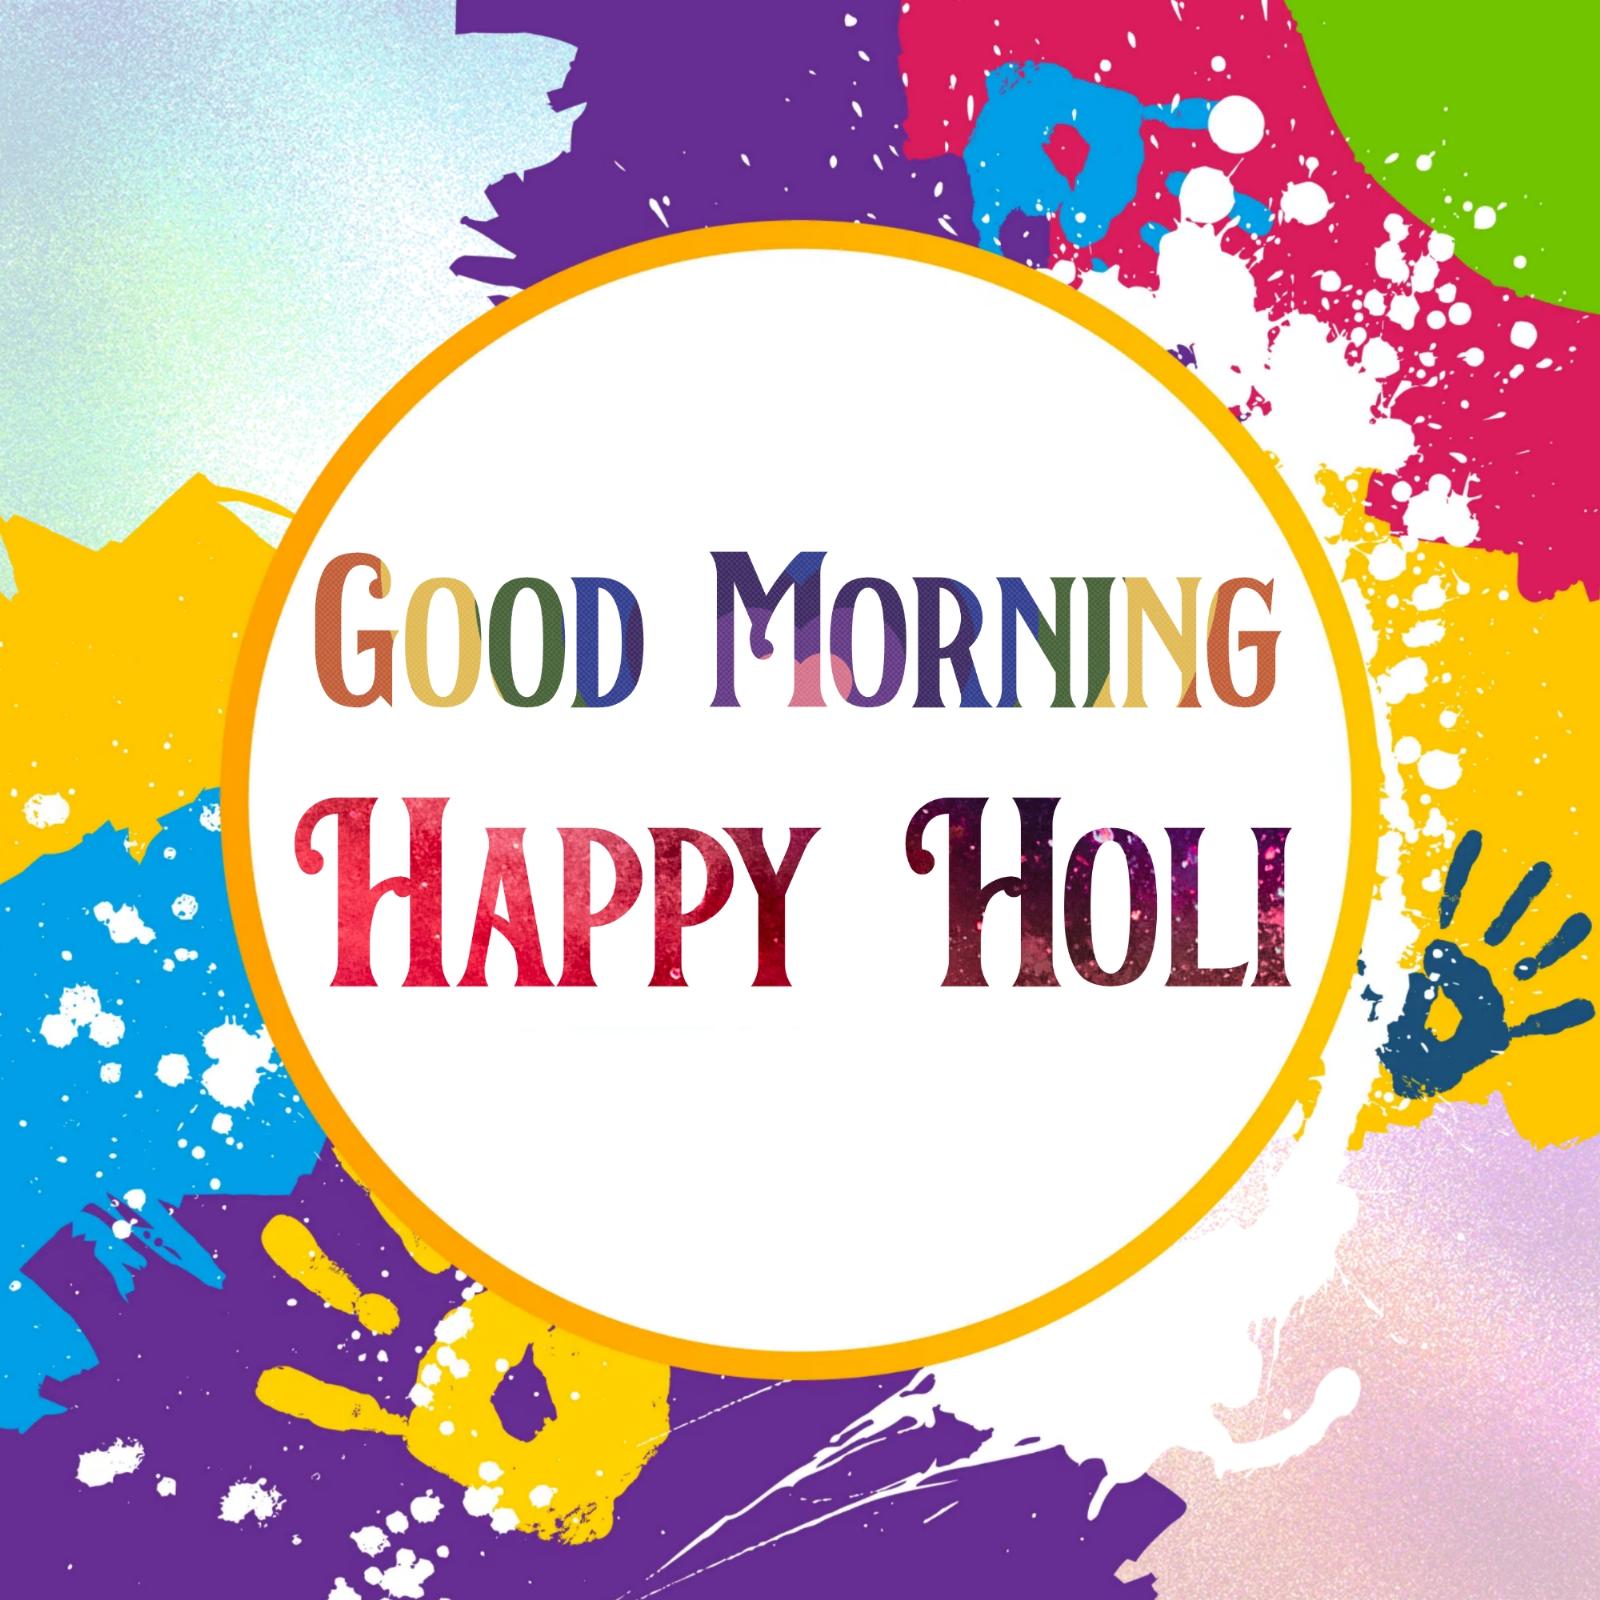 Good Morning Happy Holi Images